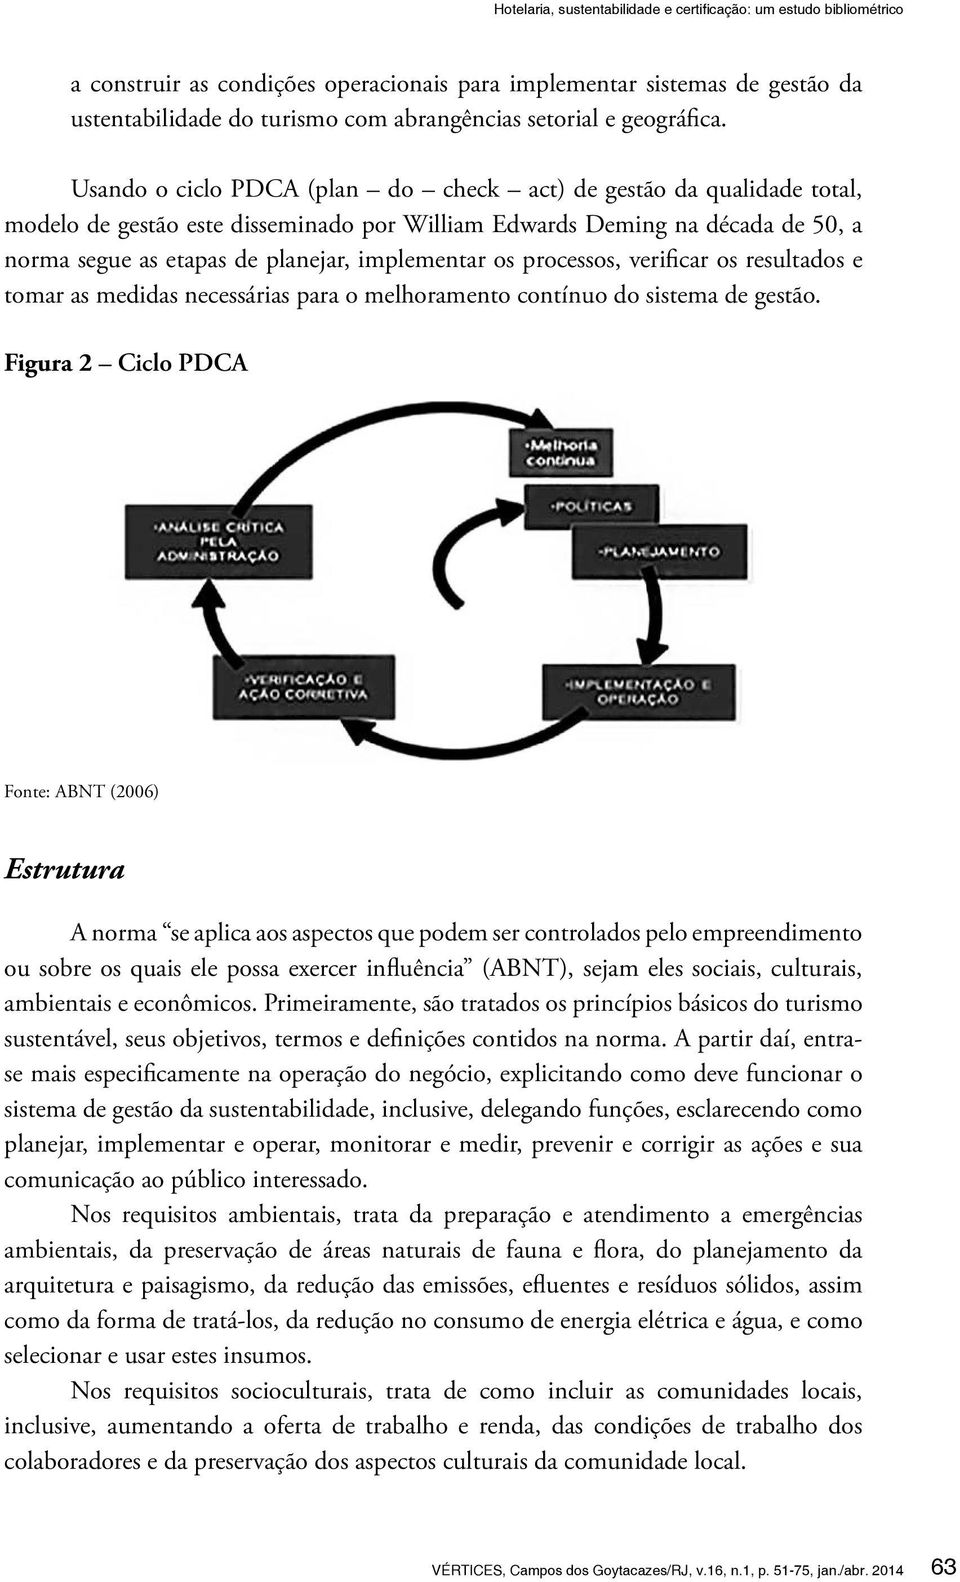 Usando o ciclo PDCA (plan do check act) de gestão da qualidade total, modelo de gestão este disseminado por William Edwards Deming na década de 50, a norma segue as etapas de planejar, implementar os